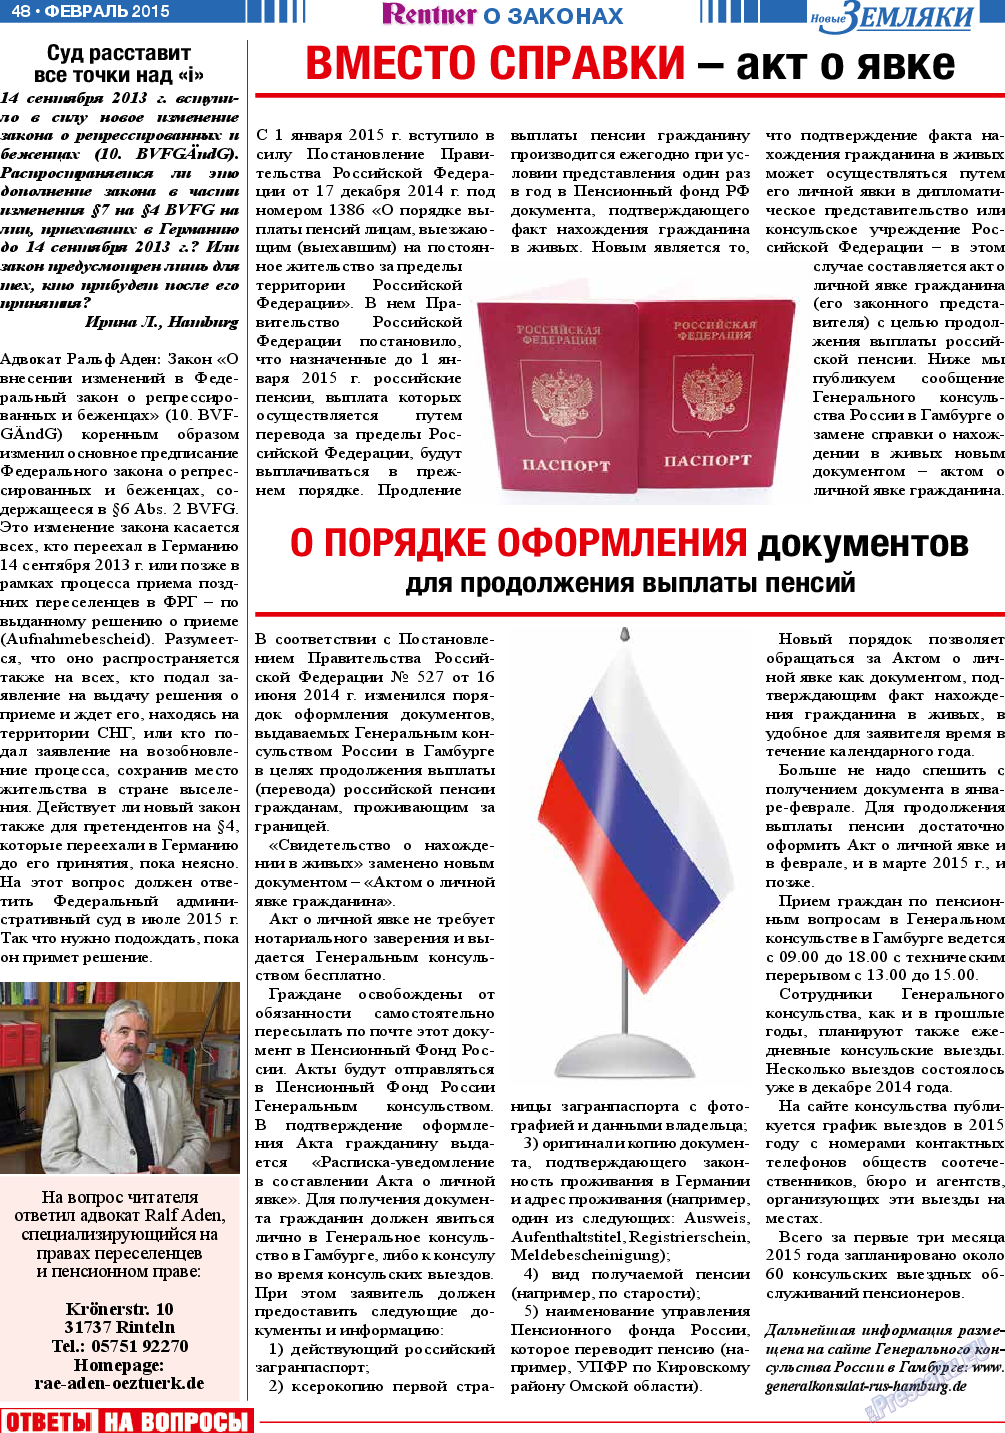 Новые Земляки (газета). 2015 год, номер 2, стр. 48